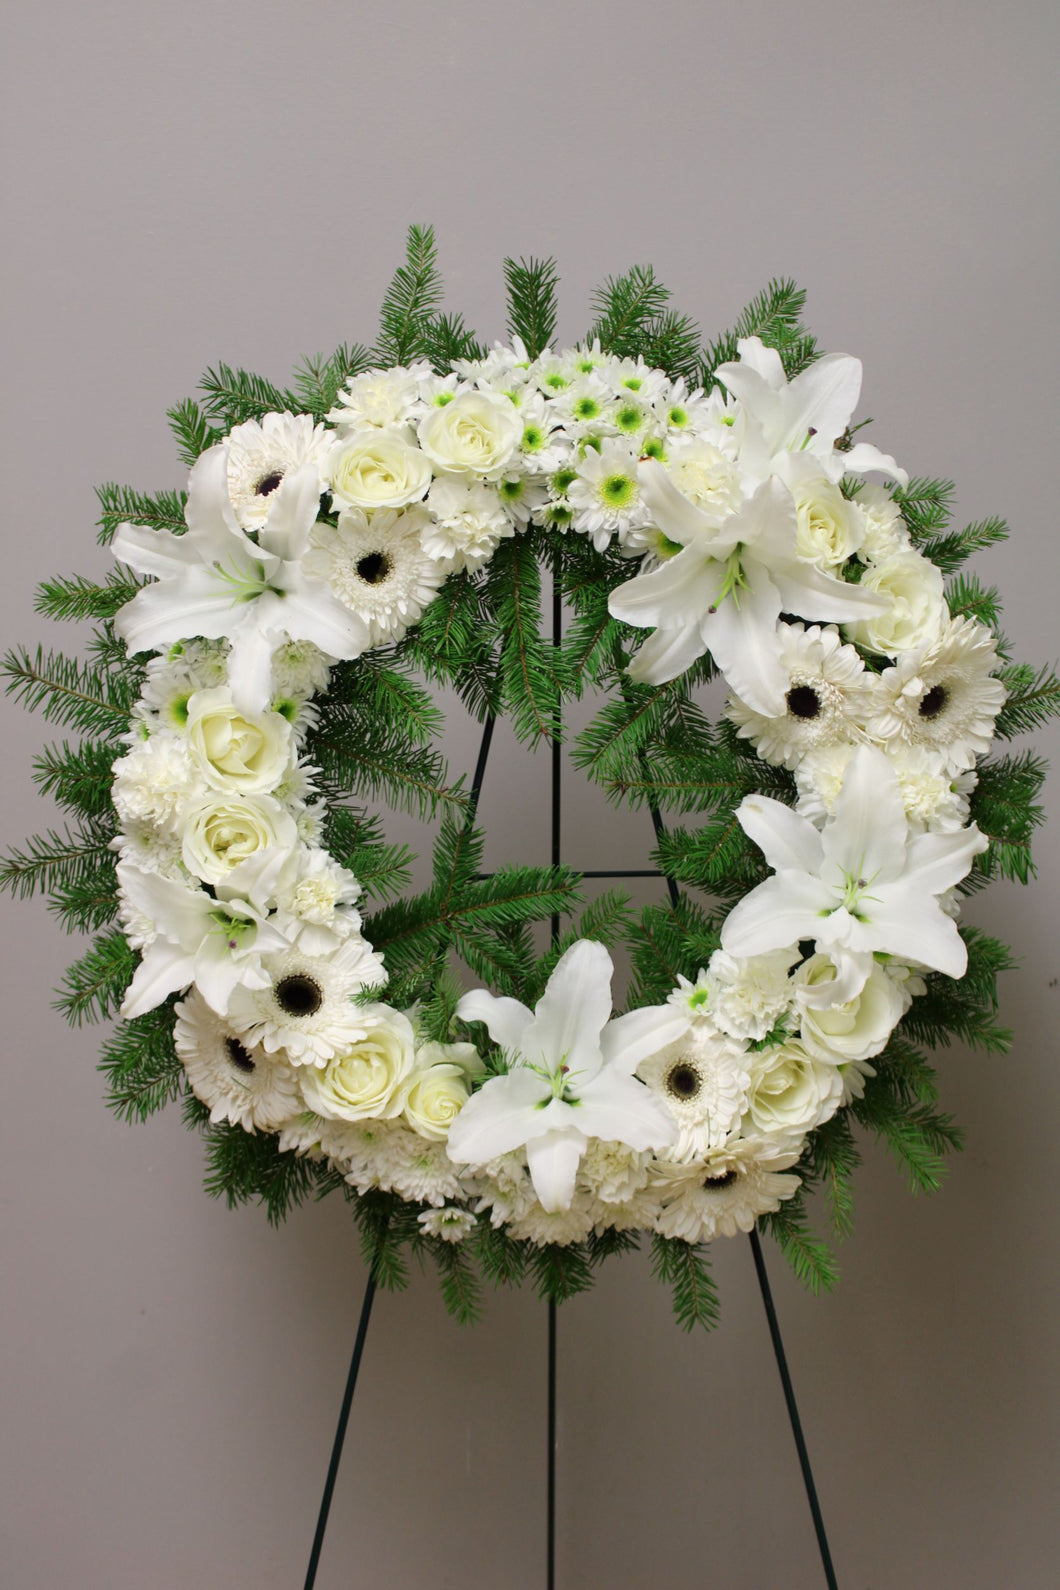 Funeral Wreath Arrangement